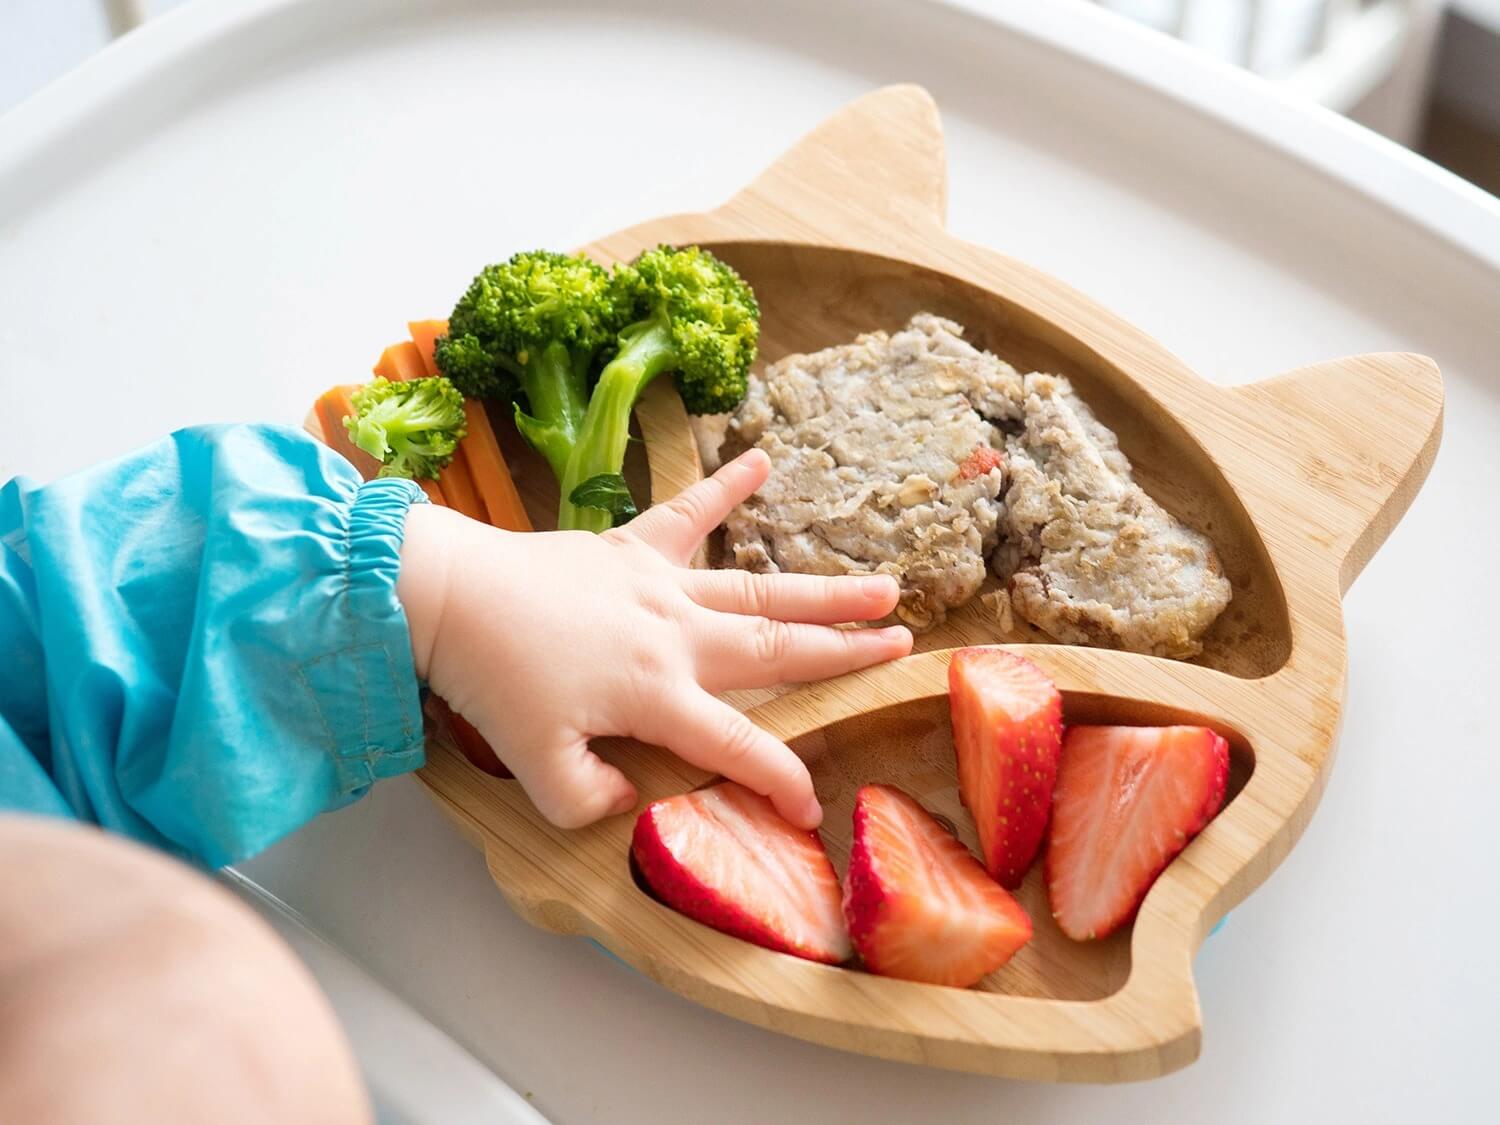 สารอาหารบำรุงสมองเด็ก ช่วยบำรุงพัฒนาการทางสมอง